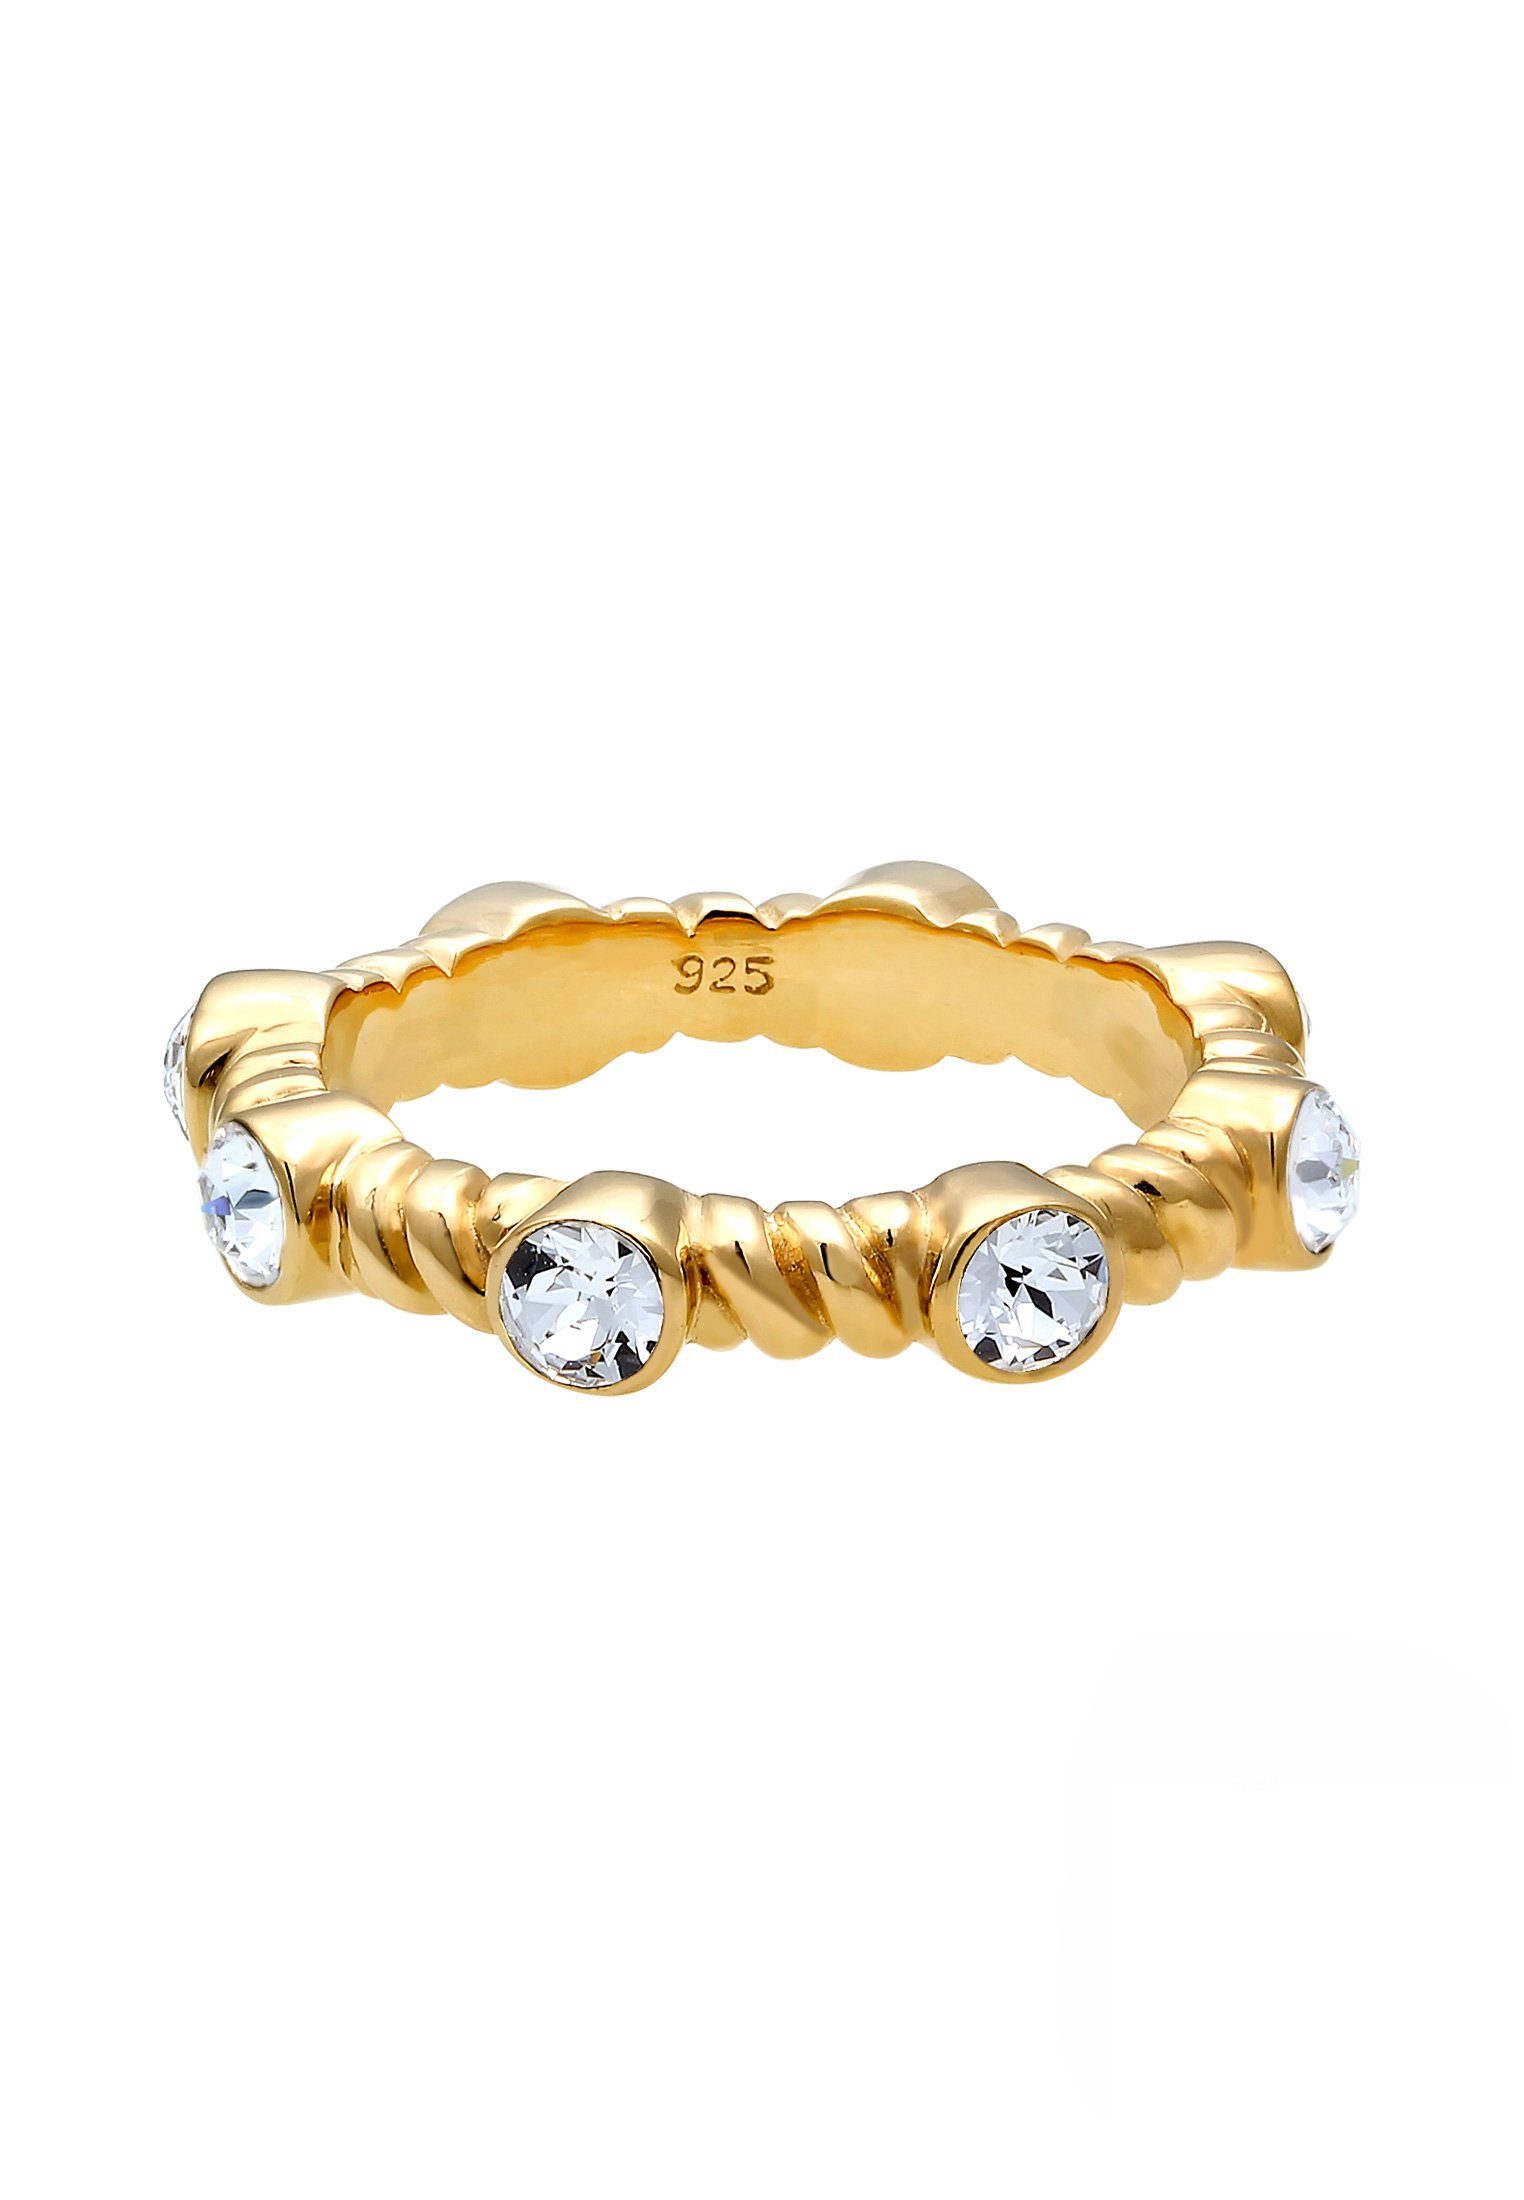 925 Fingerring Gedreht Premium Infinity Gold Kristalle Silber Elli